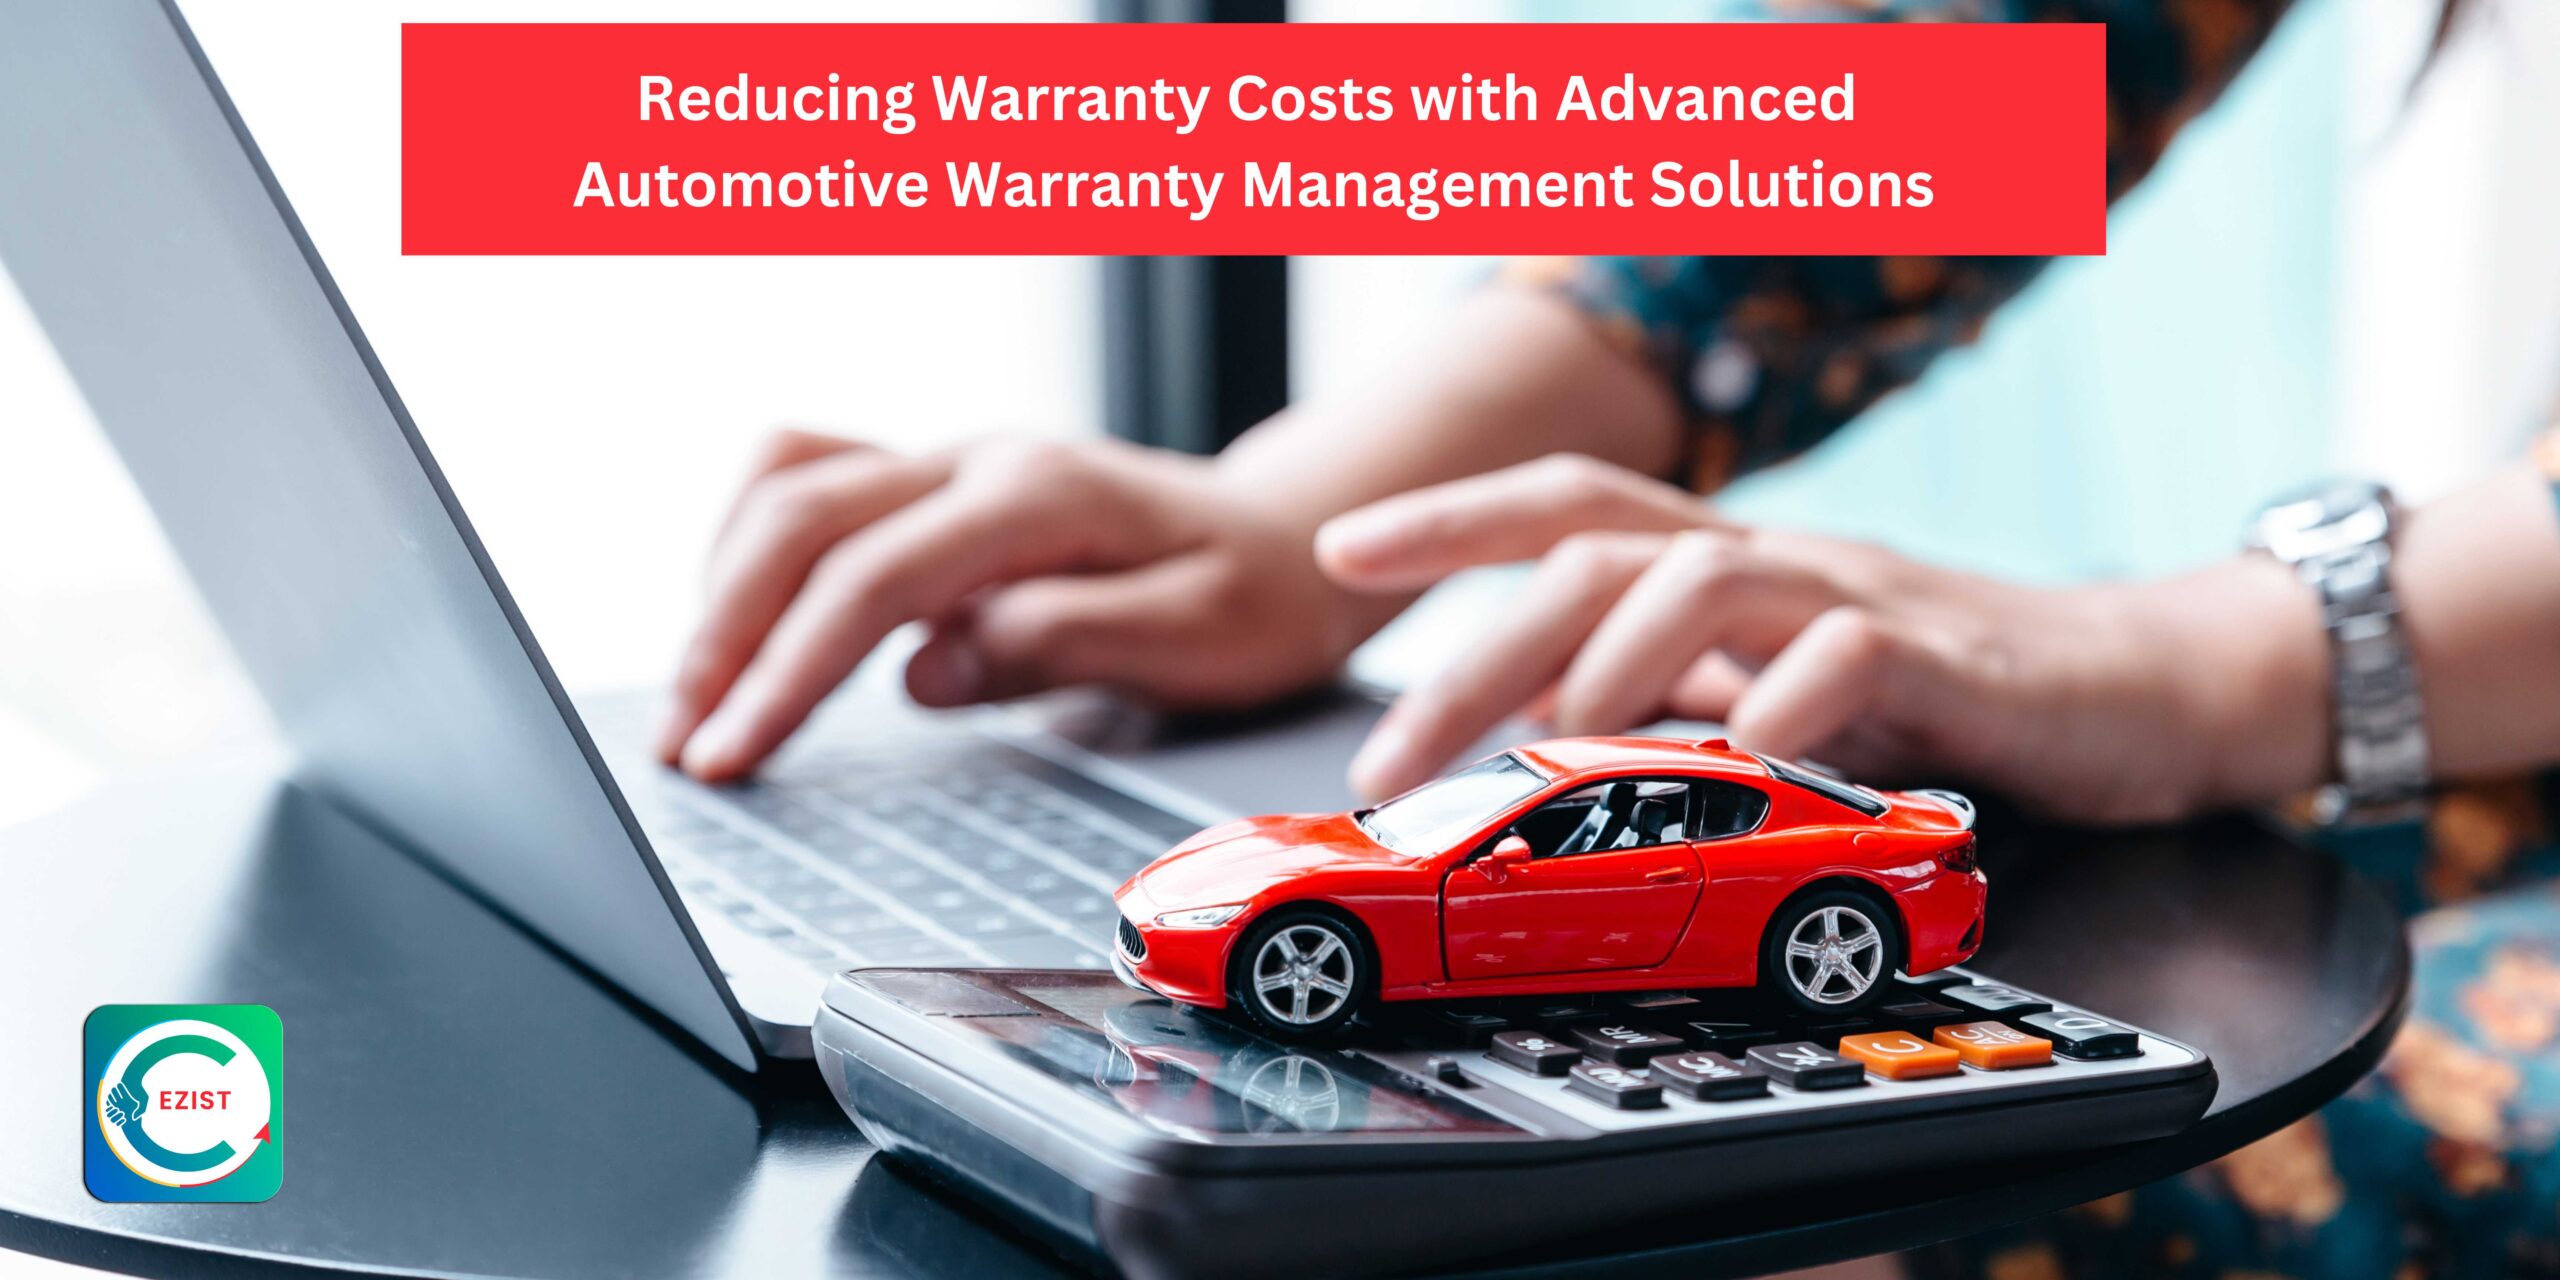 Automotive Warranty Management Solutions